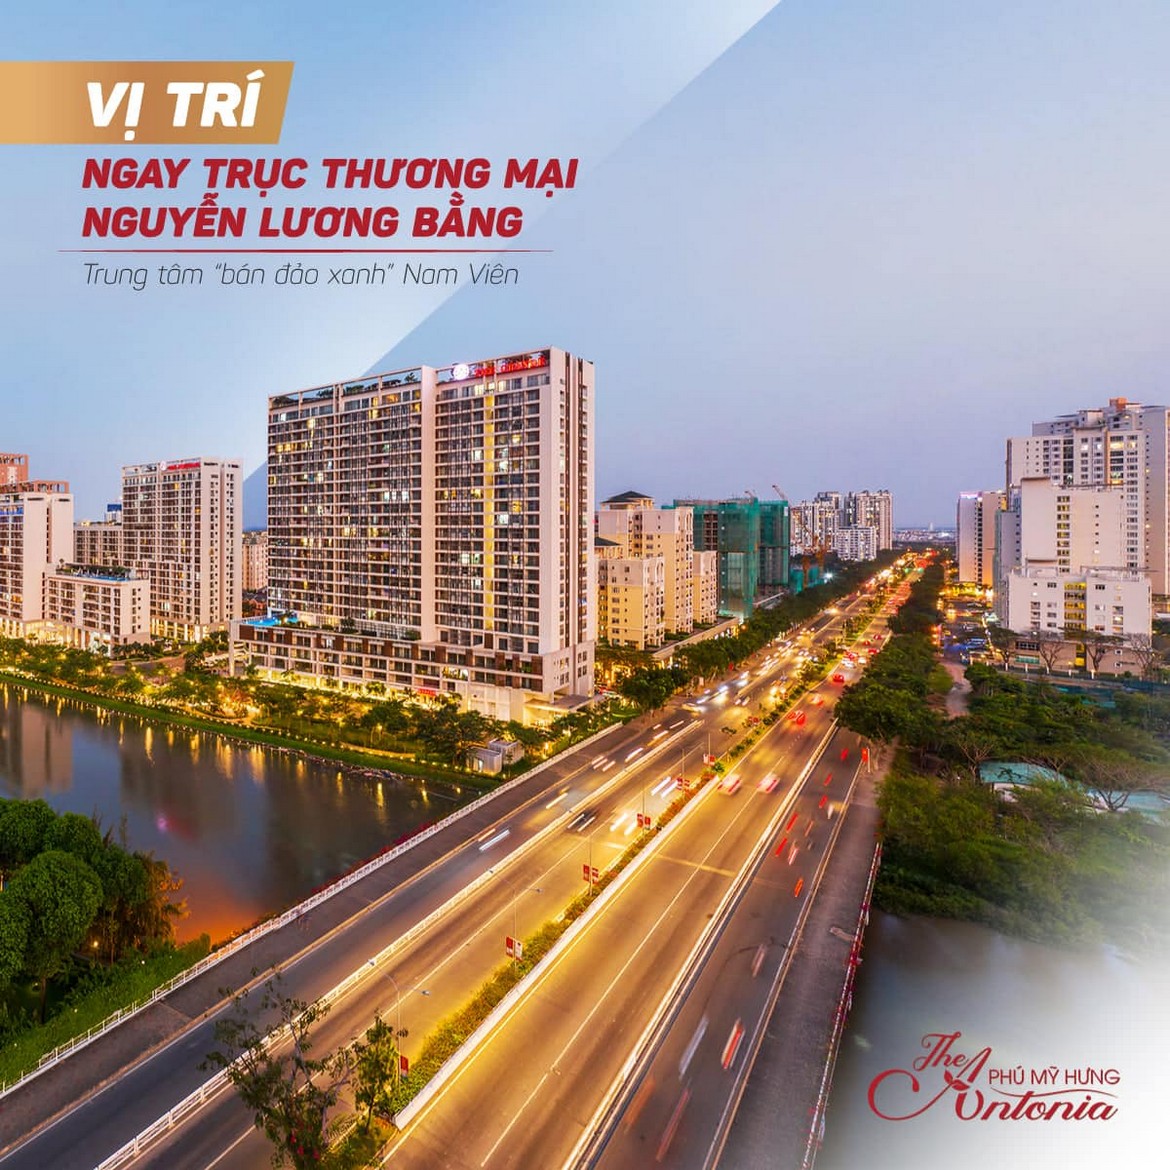 Nguyễn Lương Bằng được ví như cung đường “triệu đô” đang hiện hữu ở khu trung tâm Quận 1 như Đồng Khởi, Hàm Nghi, Lê Lợi…